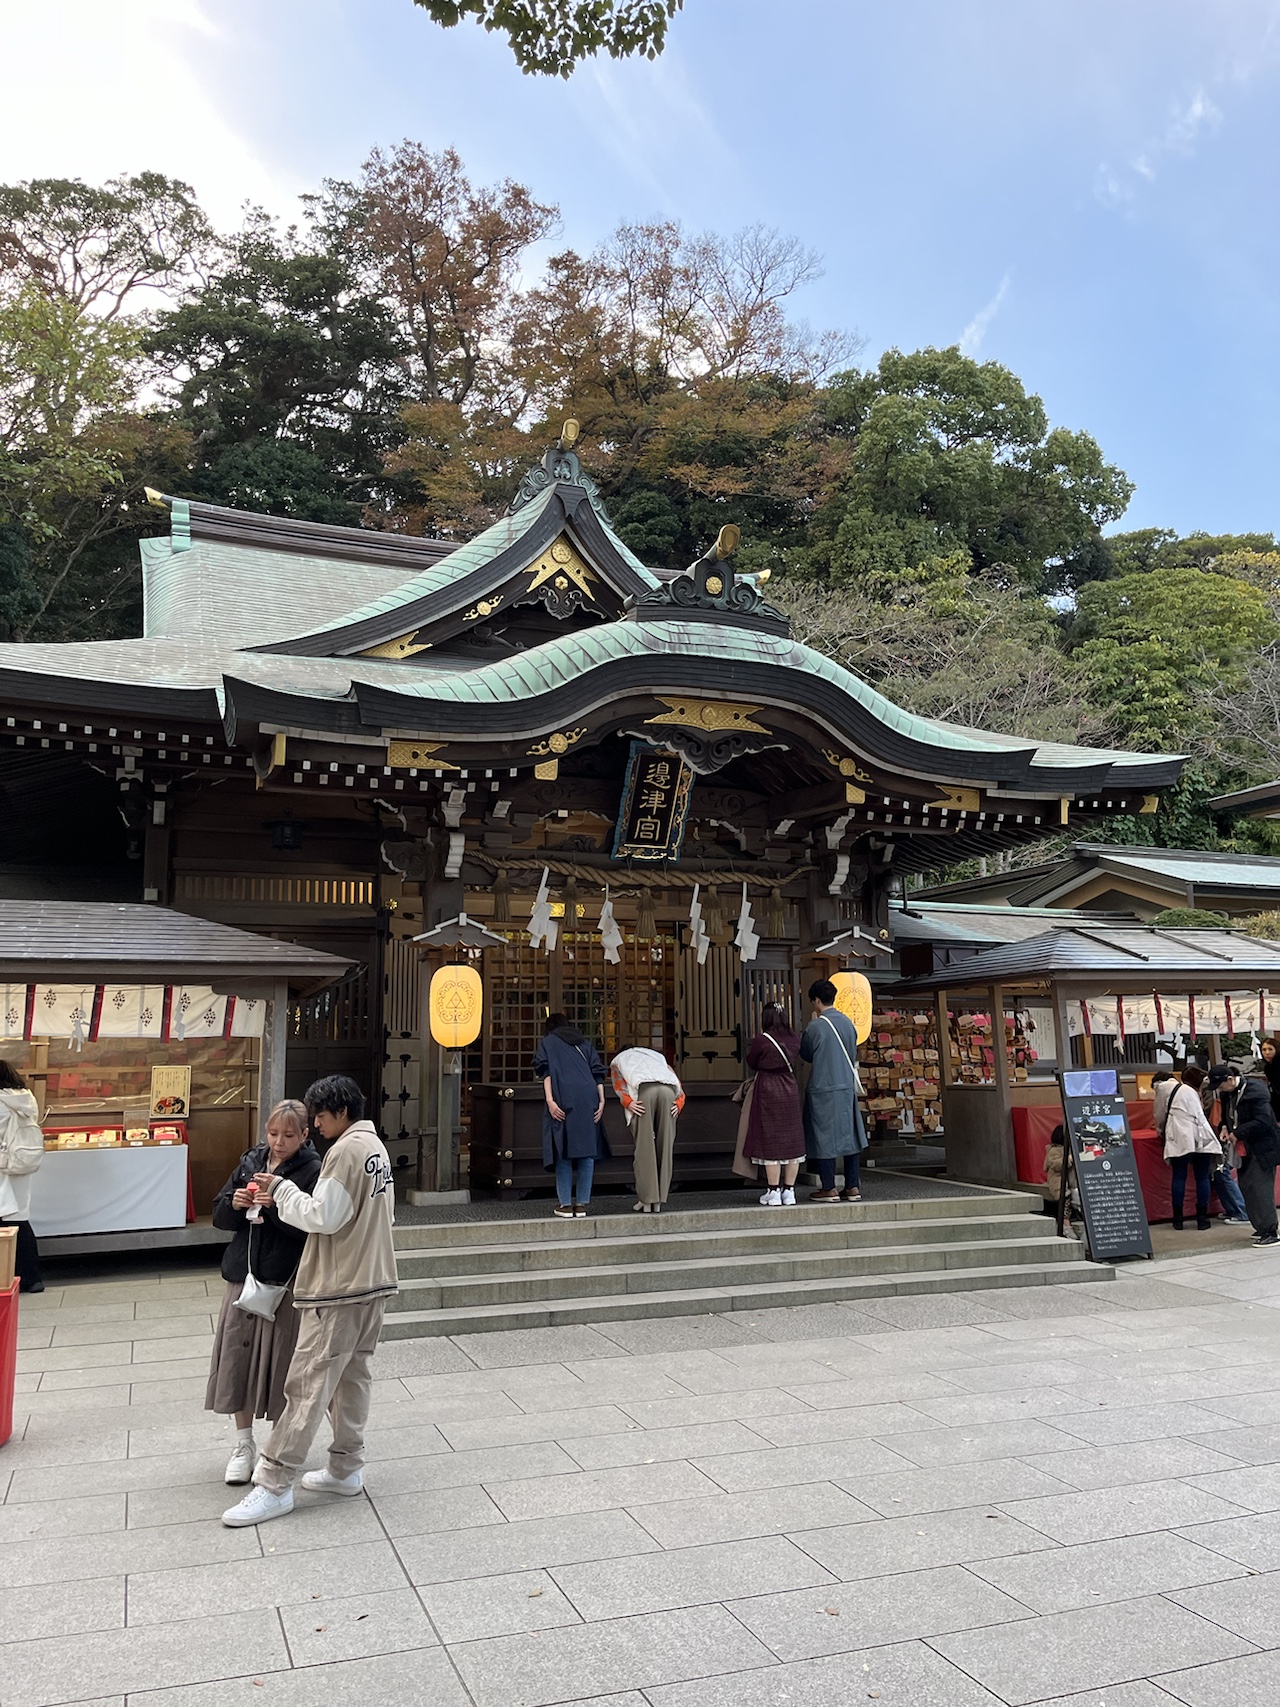 Inside the Enoshima shrine complex